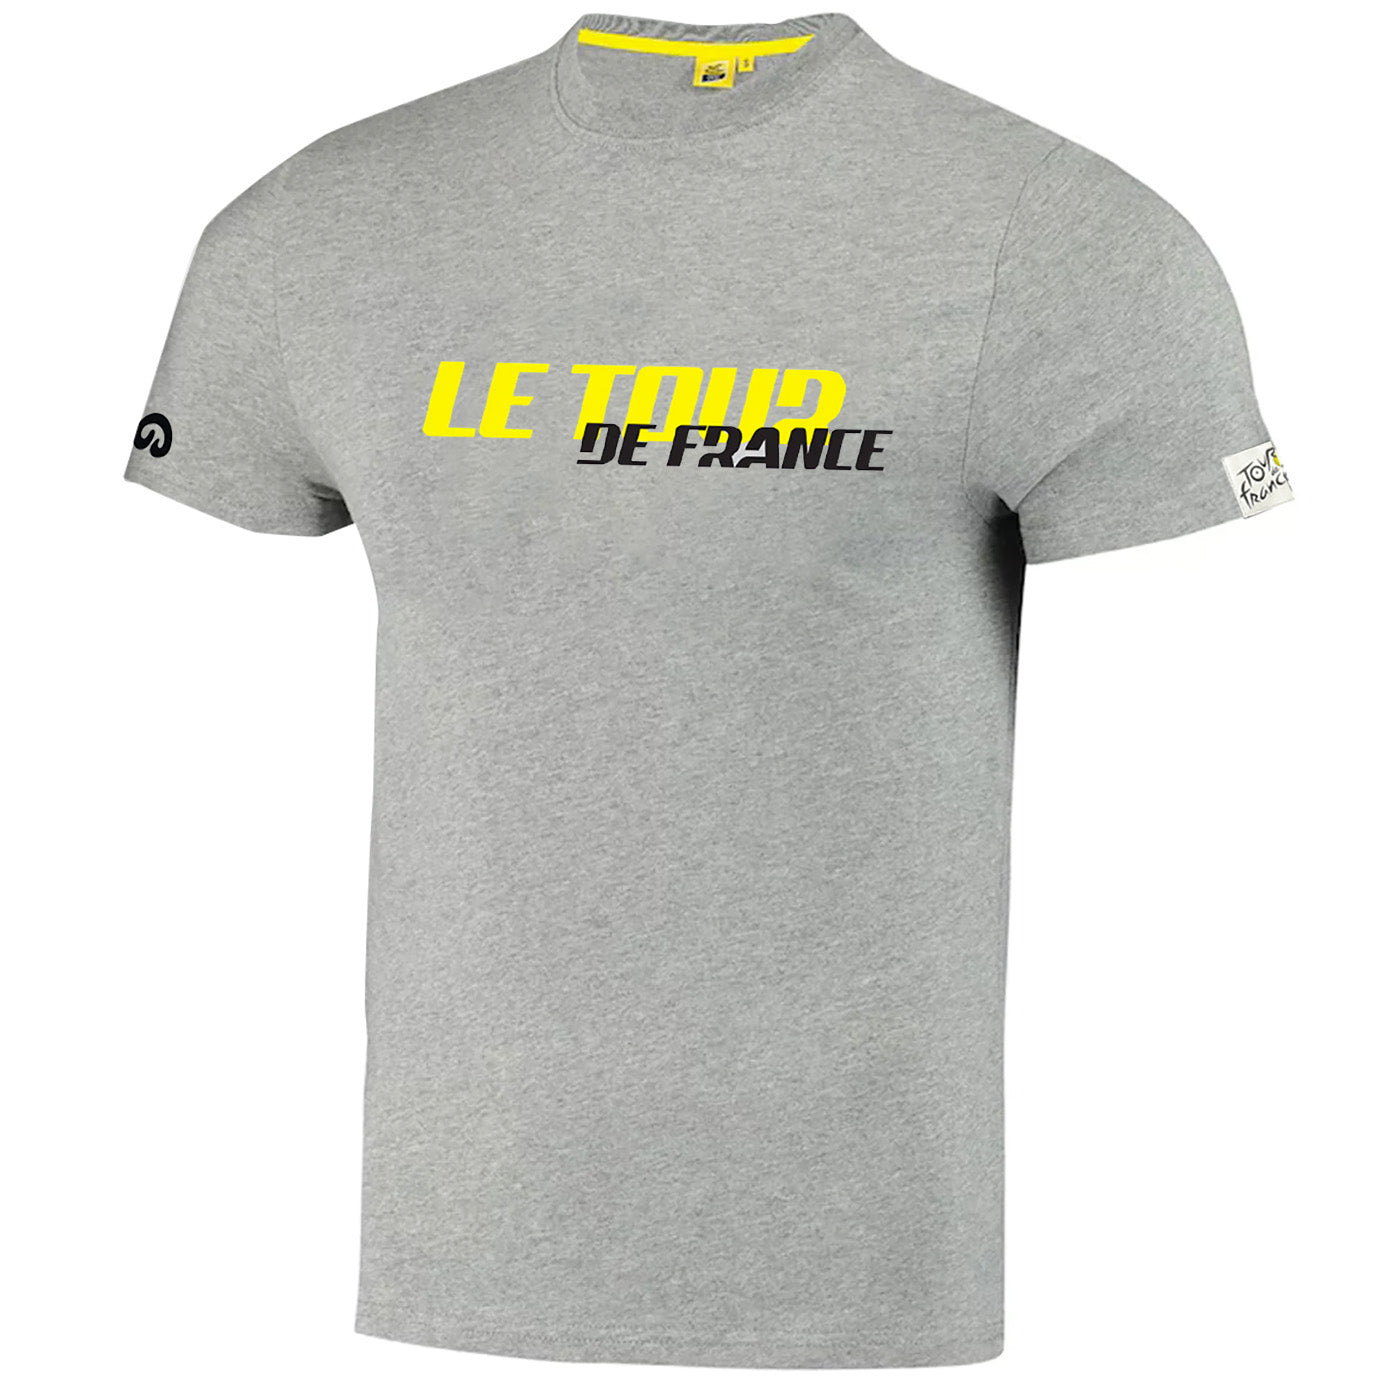 Tour de France Puncheur T-Shirt - Grey